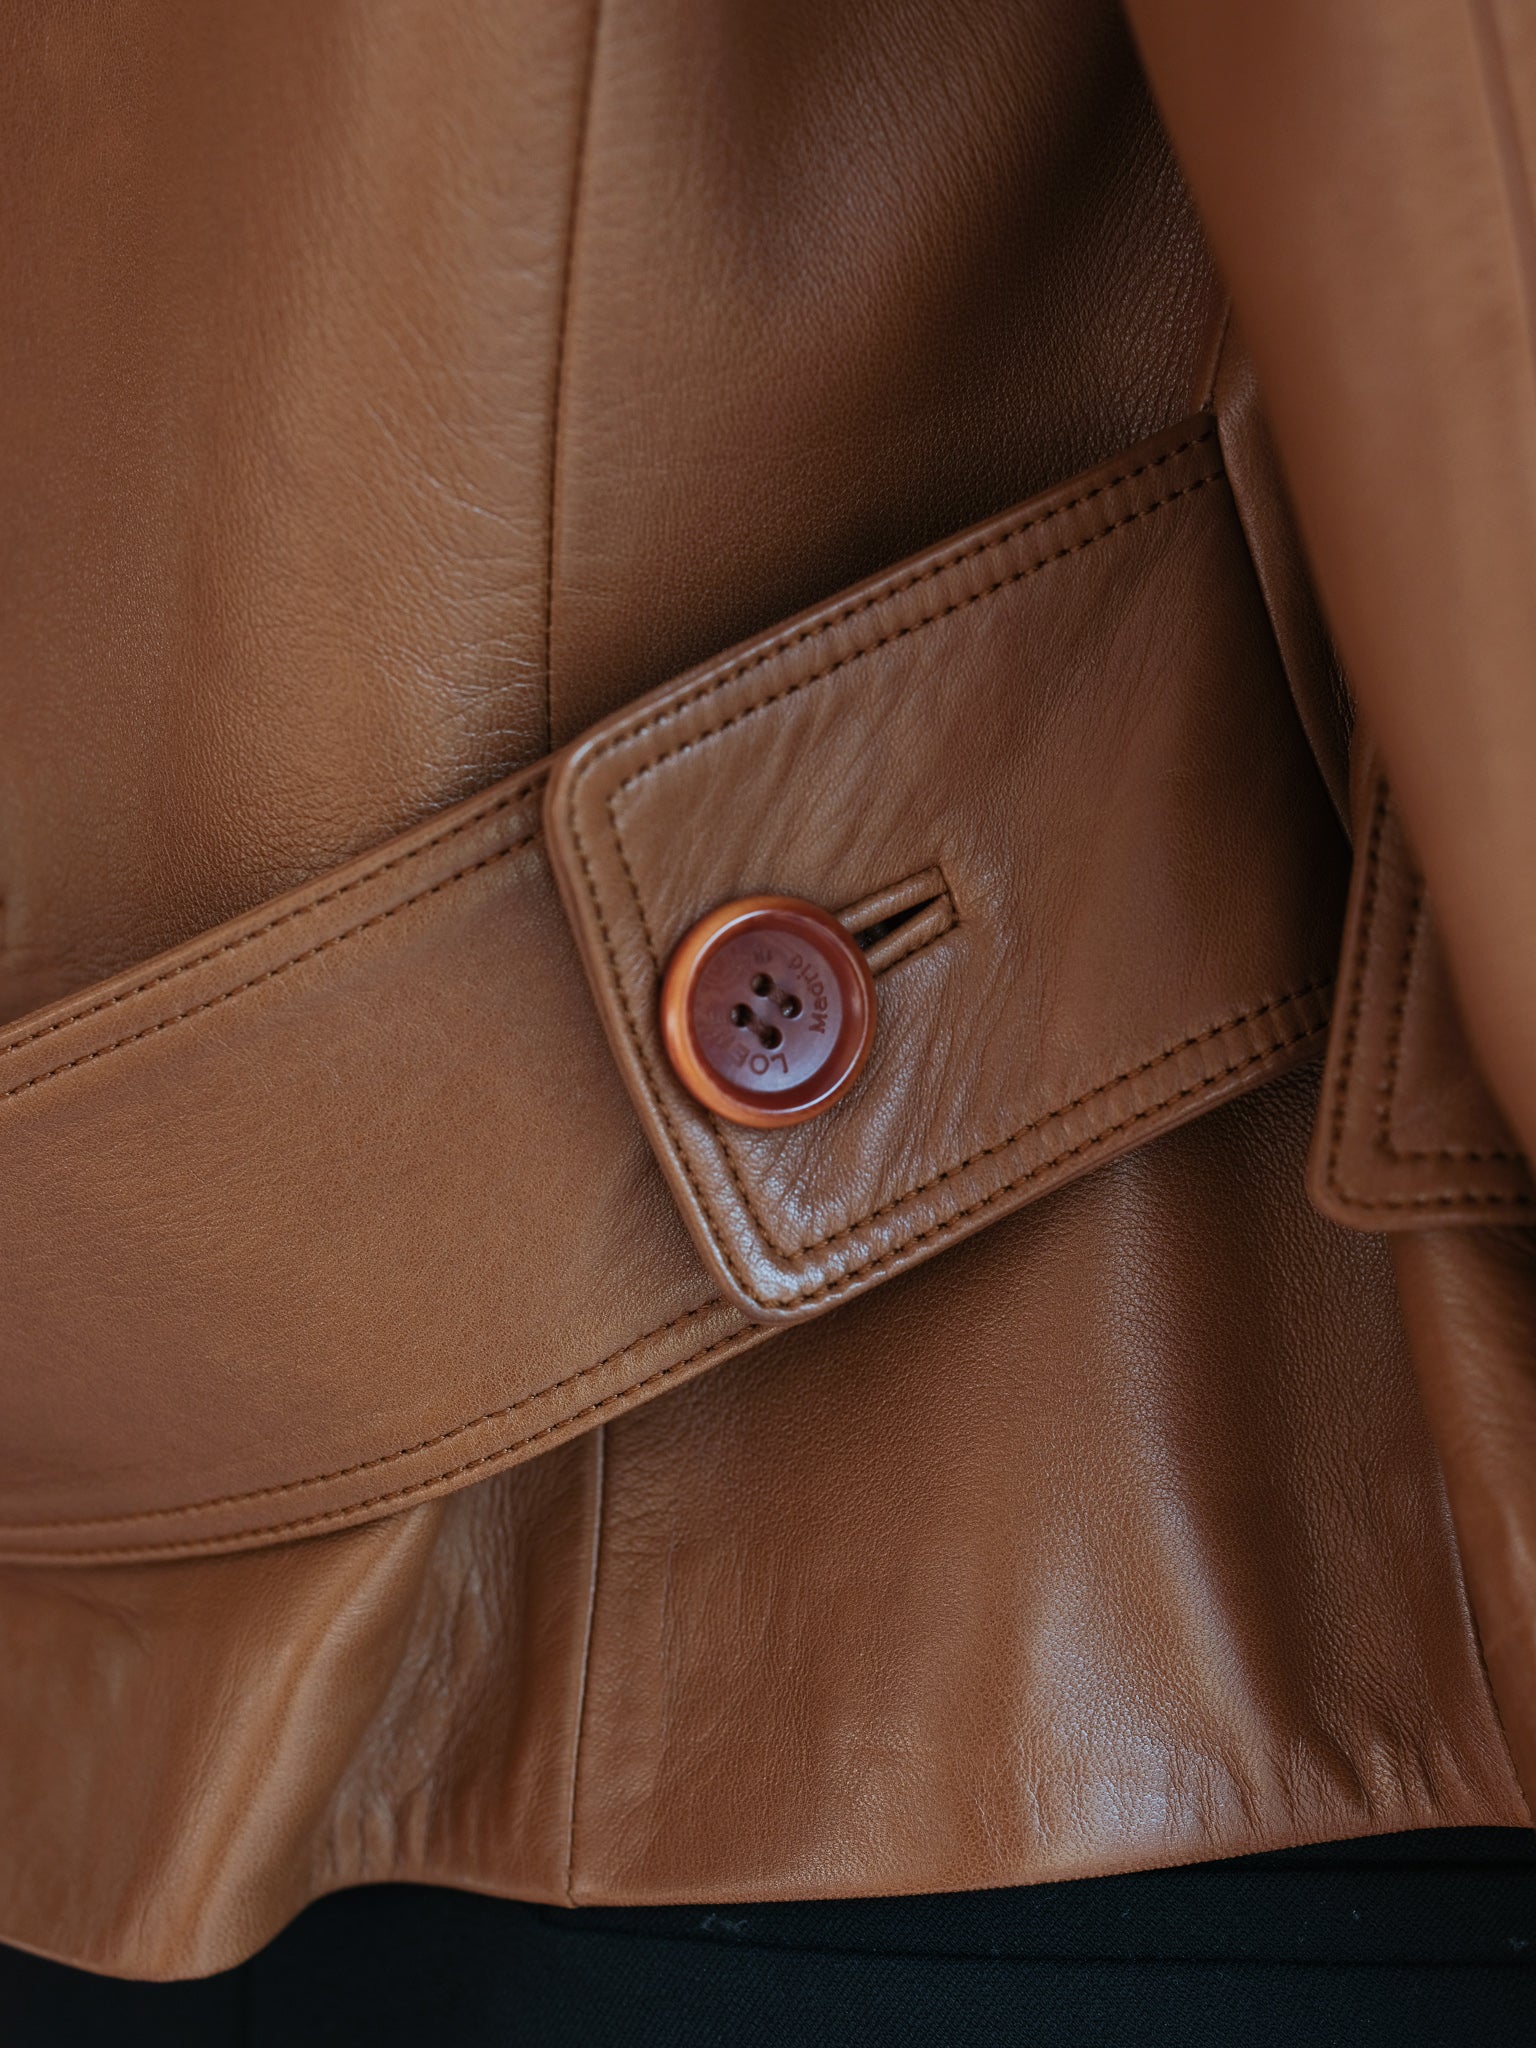 Loewe short leather jacket